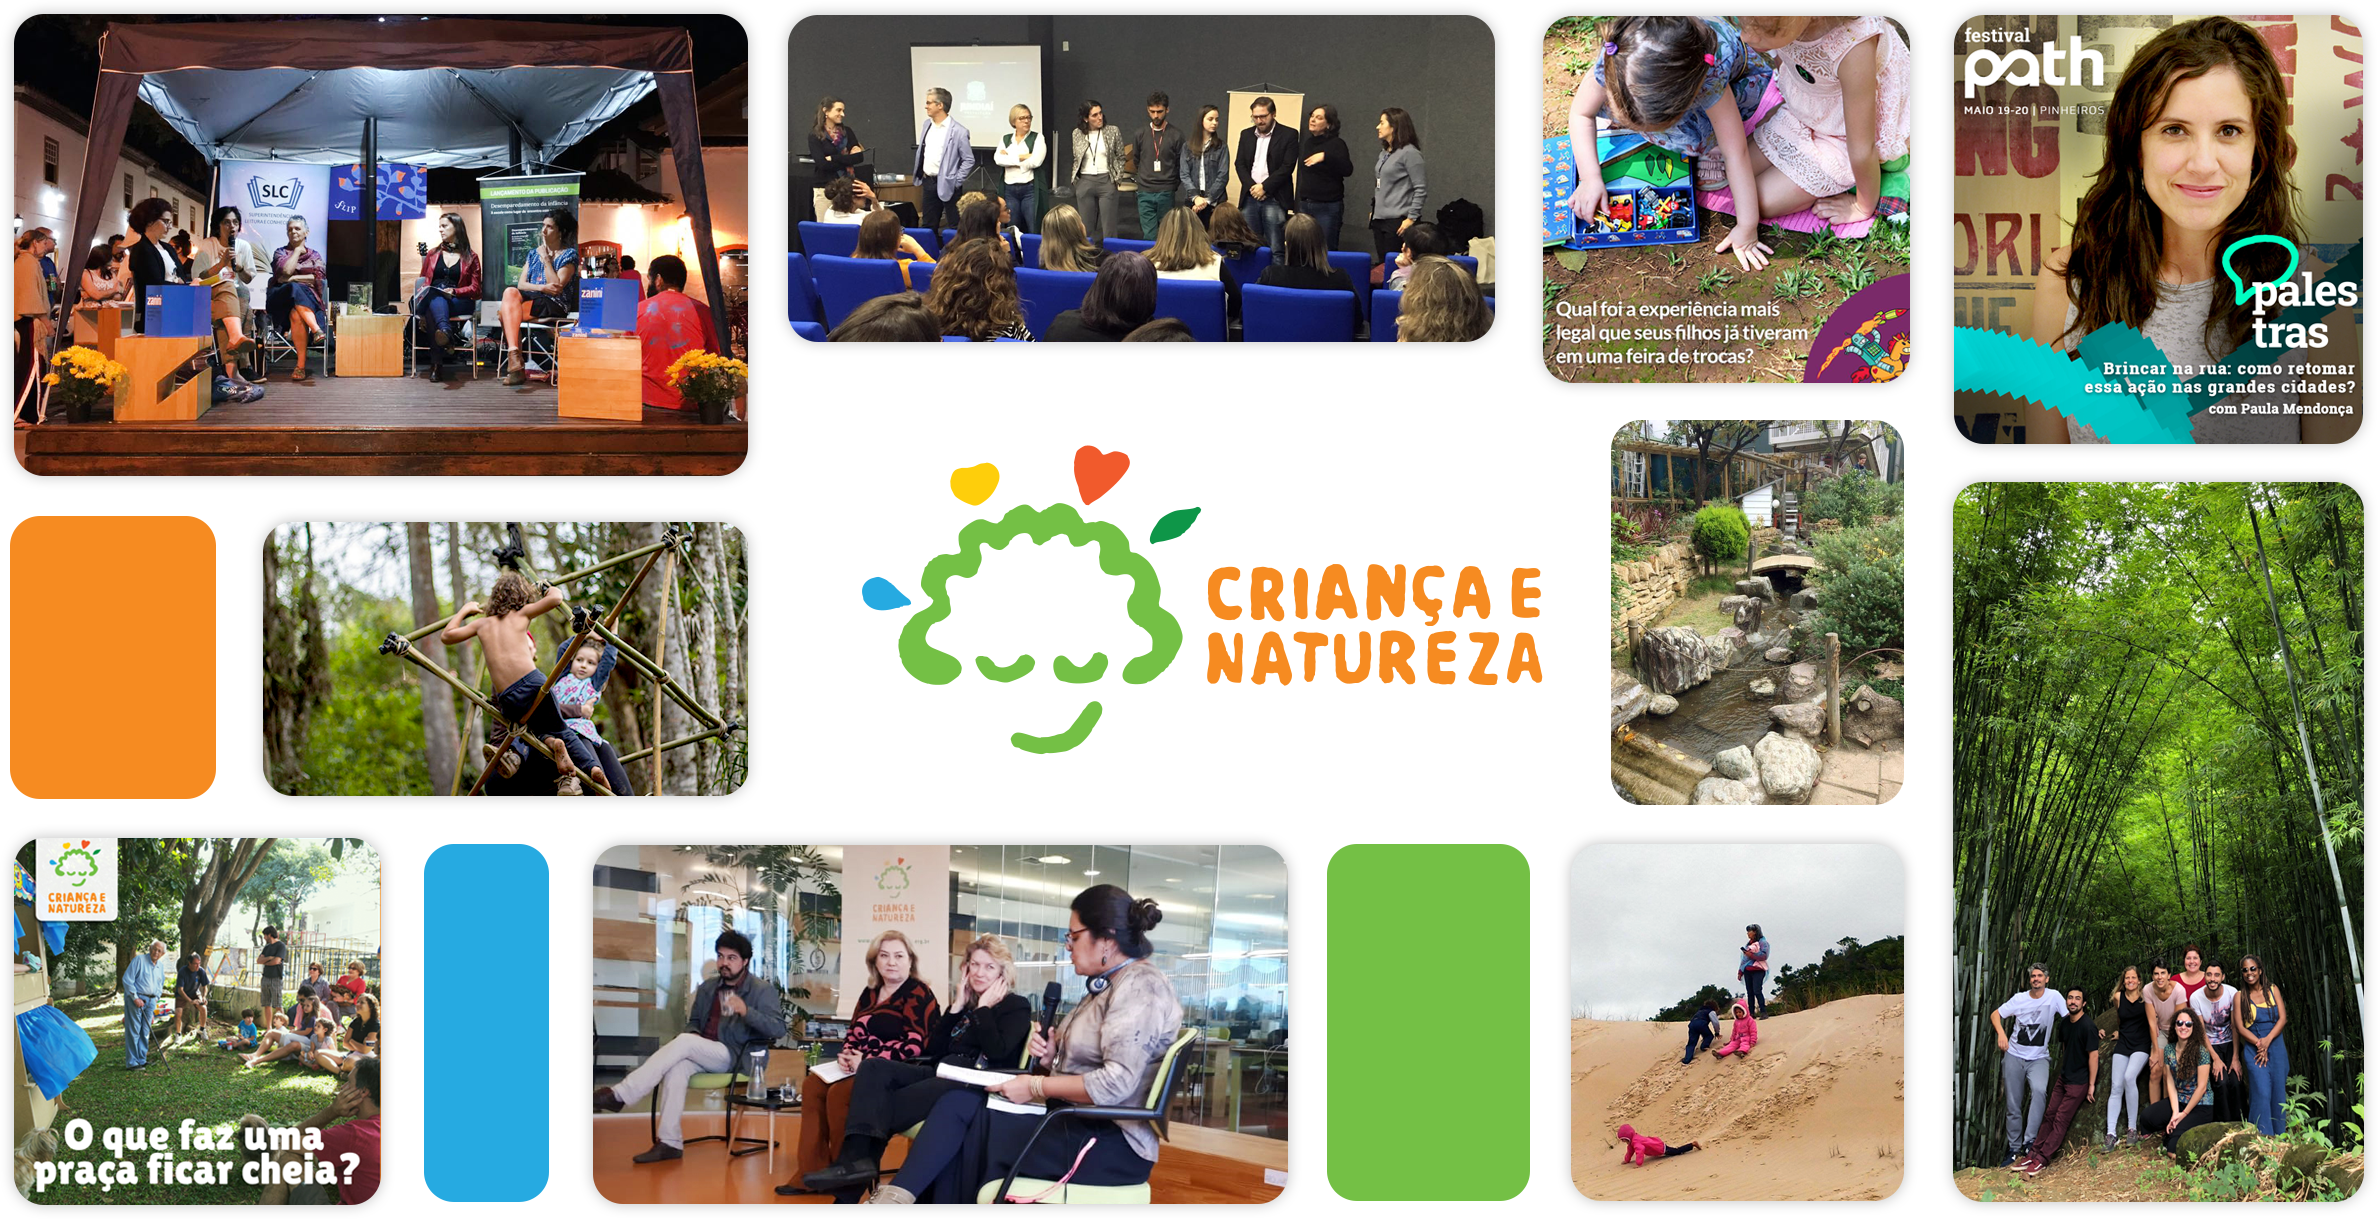 Montagem com algumas fotos de palestras e ações do Criança e Natureza, com a logo do programa no centro.